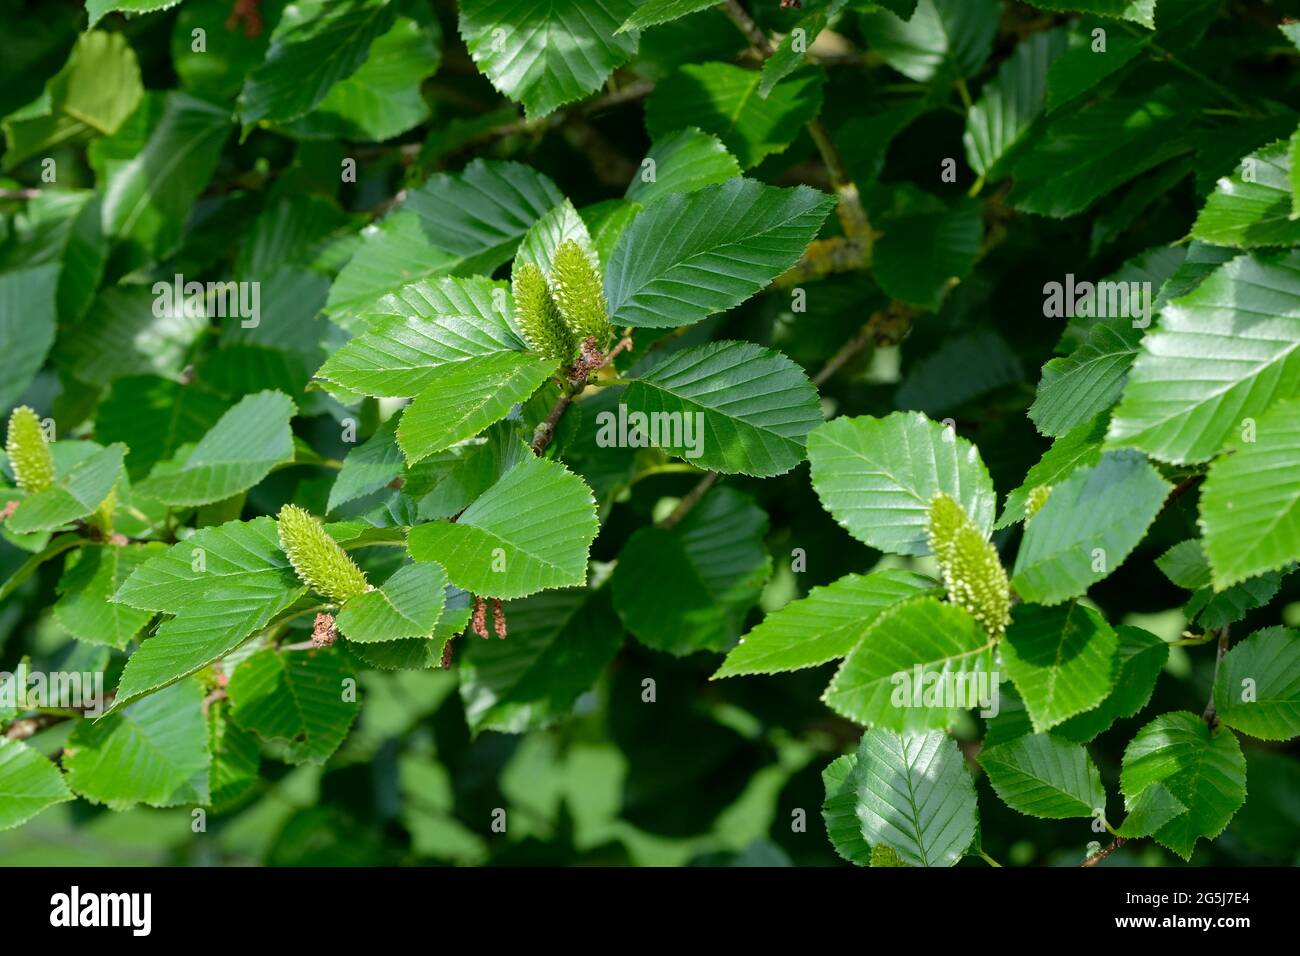 Betula medwediewii, genannt Transkaukasische Birke, Kaukasische Birke oder Medwediew-Birke, die grüne weibliche und braune männliche Blüten zeigt Stockfoto